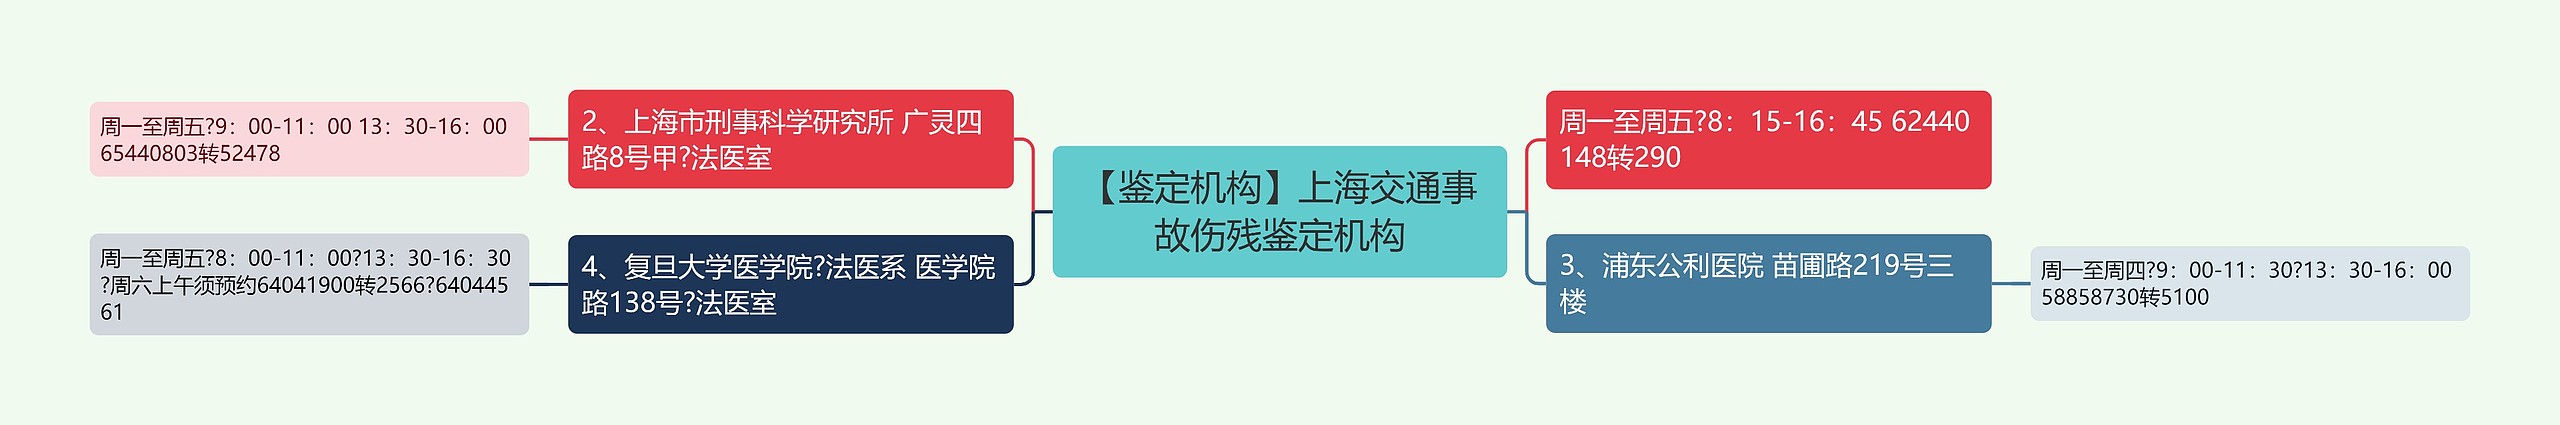 【鉴定机构】上海交通事故伤残鉴定机构